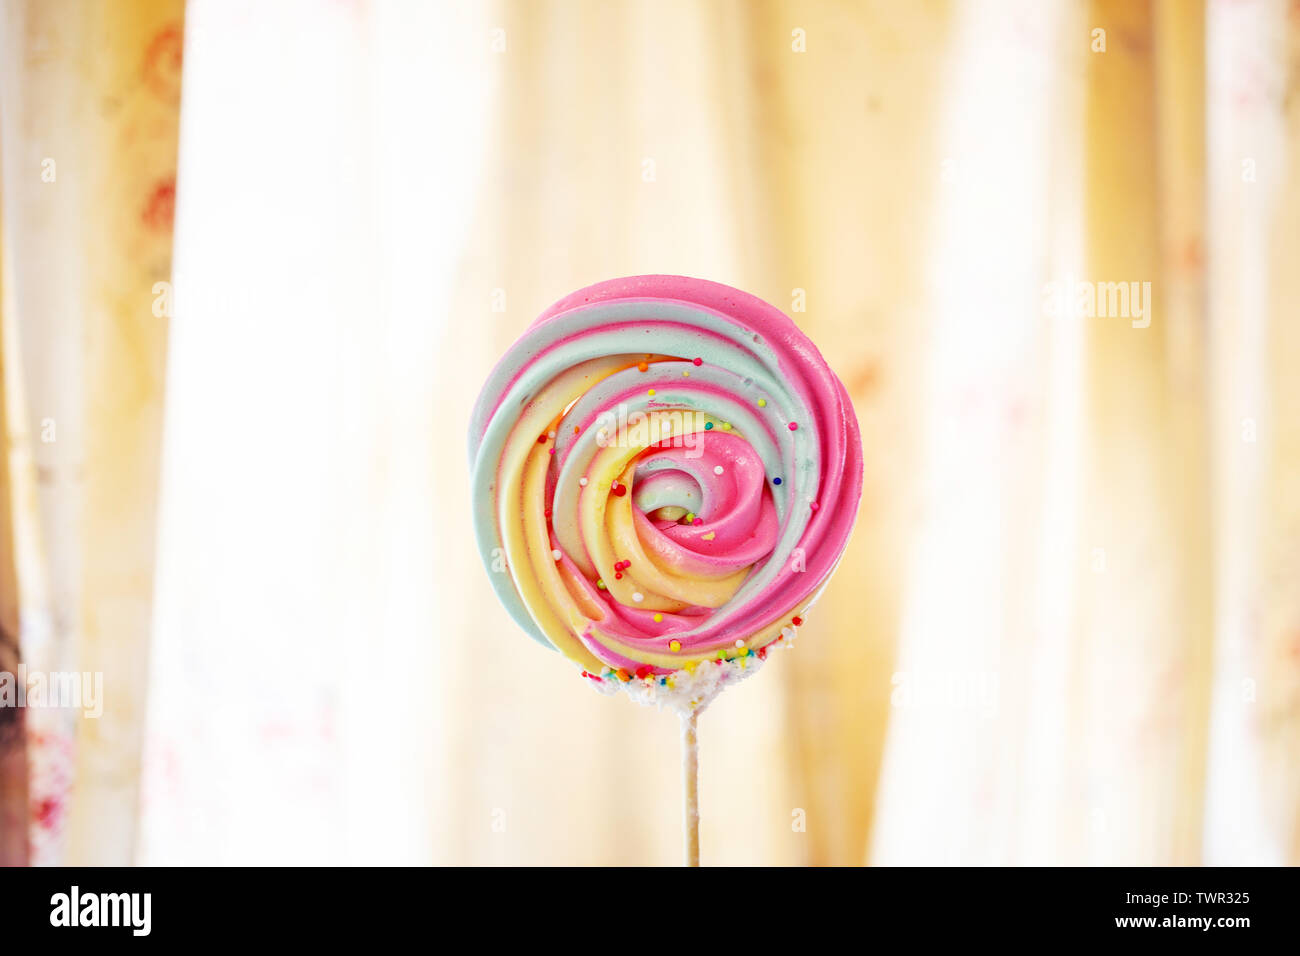 Sweet candy couleur meringue dessert avec du stick hommade sur fond de rideau vintage Banque D'Images